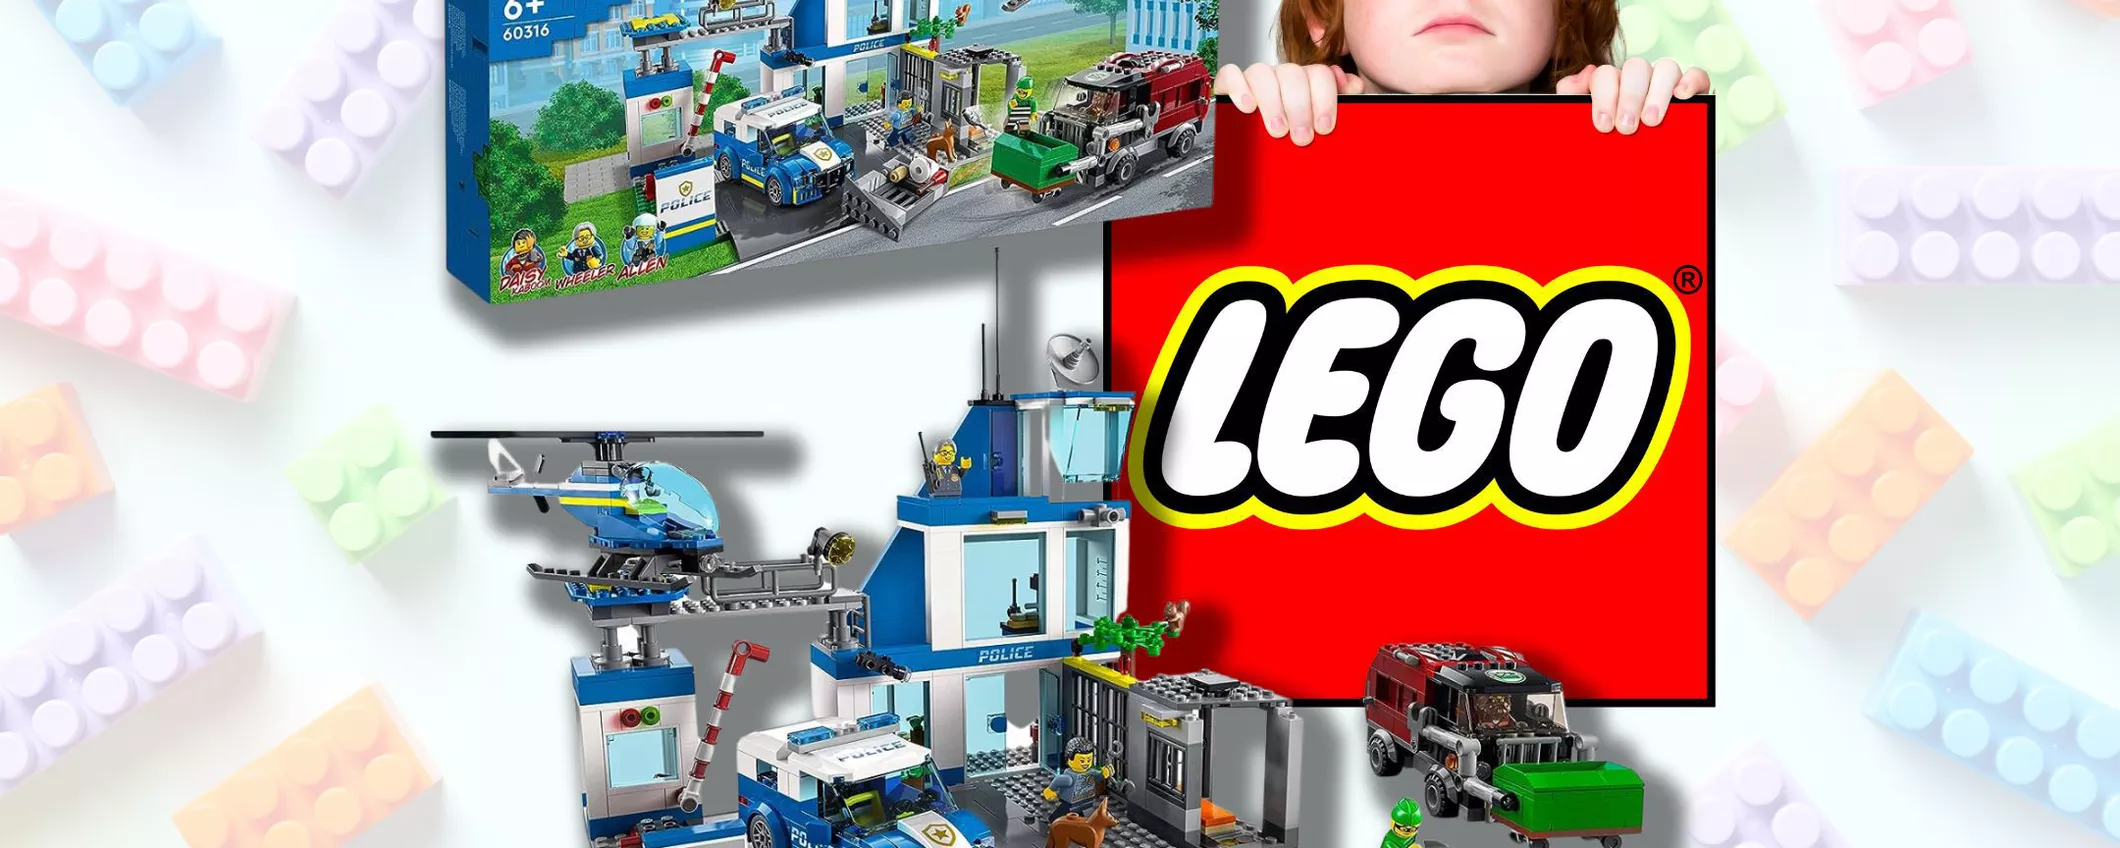 LEGO City Stazione di Polizia: IDEA REGALO a prezzo OFFERTA su Amazon!